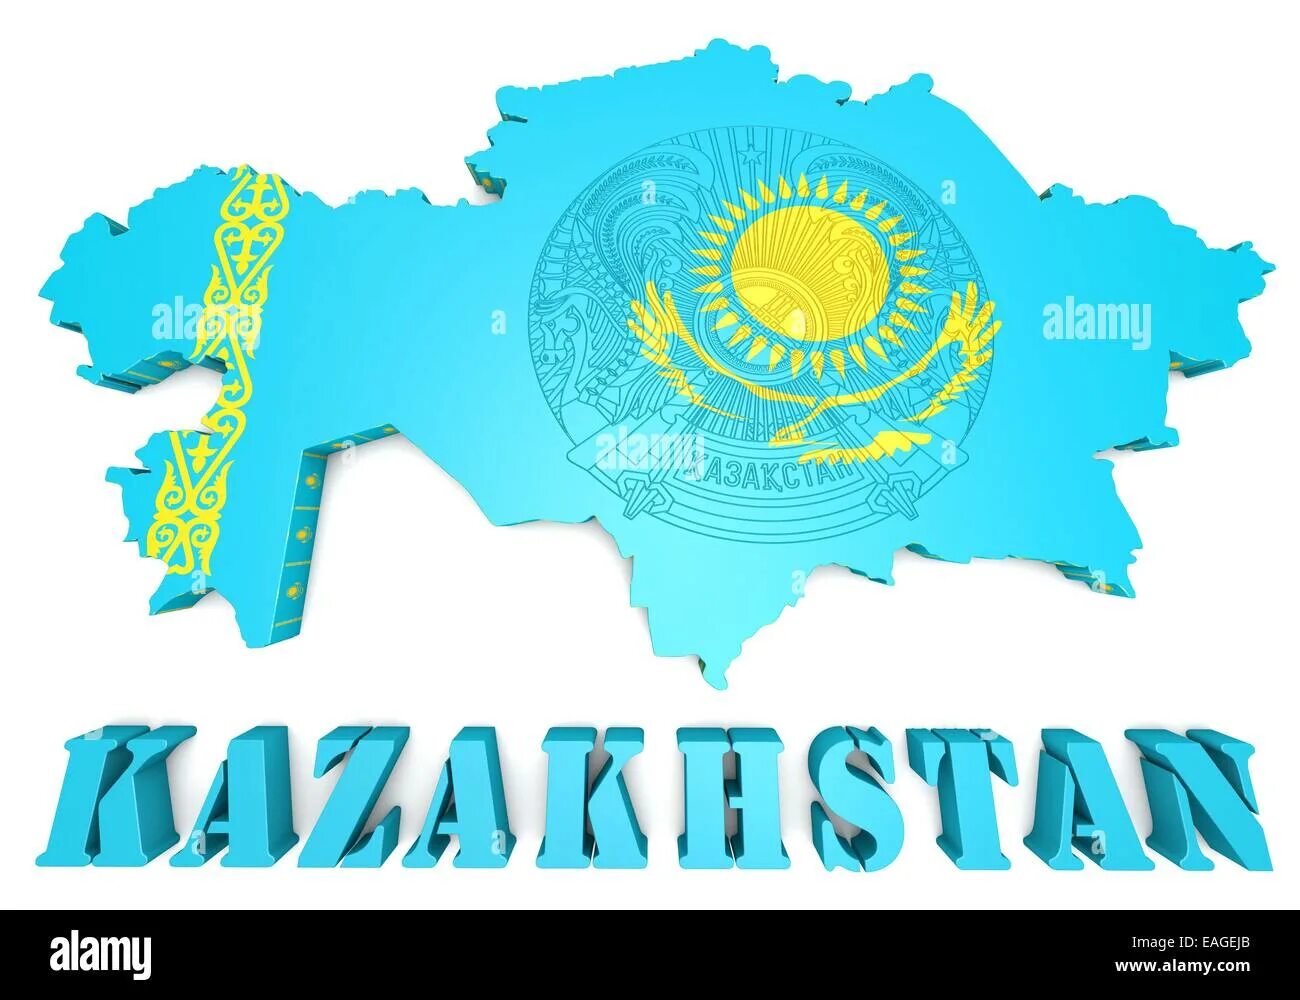 Казахстан надпись. Казахстан вектор. Казахстан надпись красивая. Флаг Казахстана с надписью Казахстан. I am kazakh